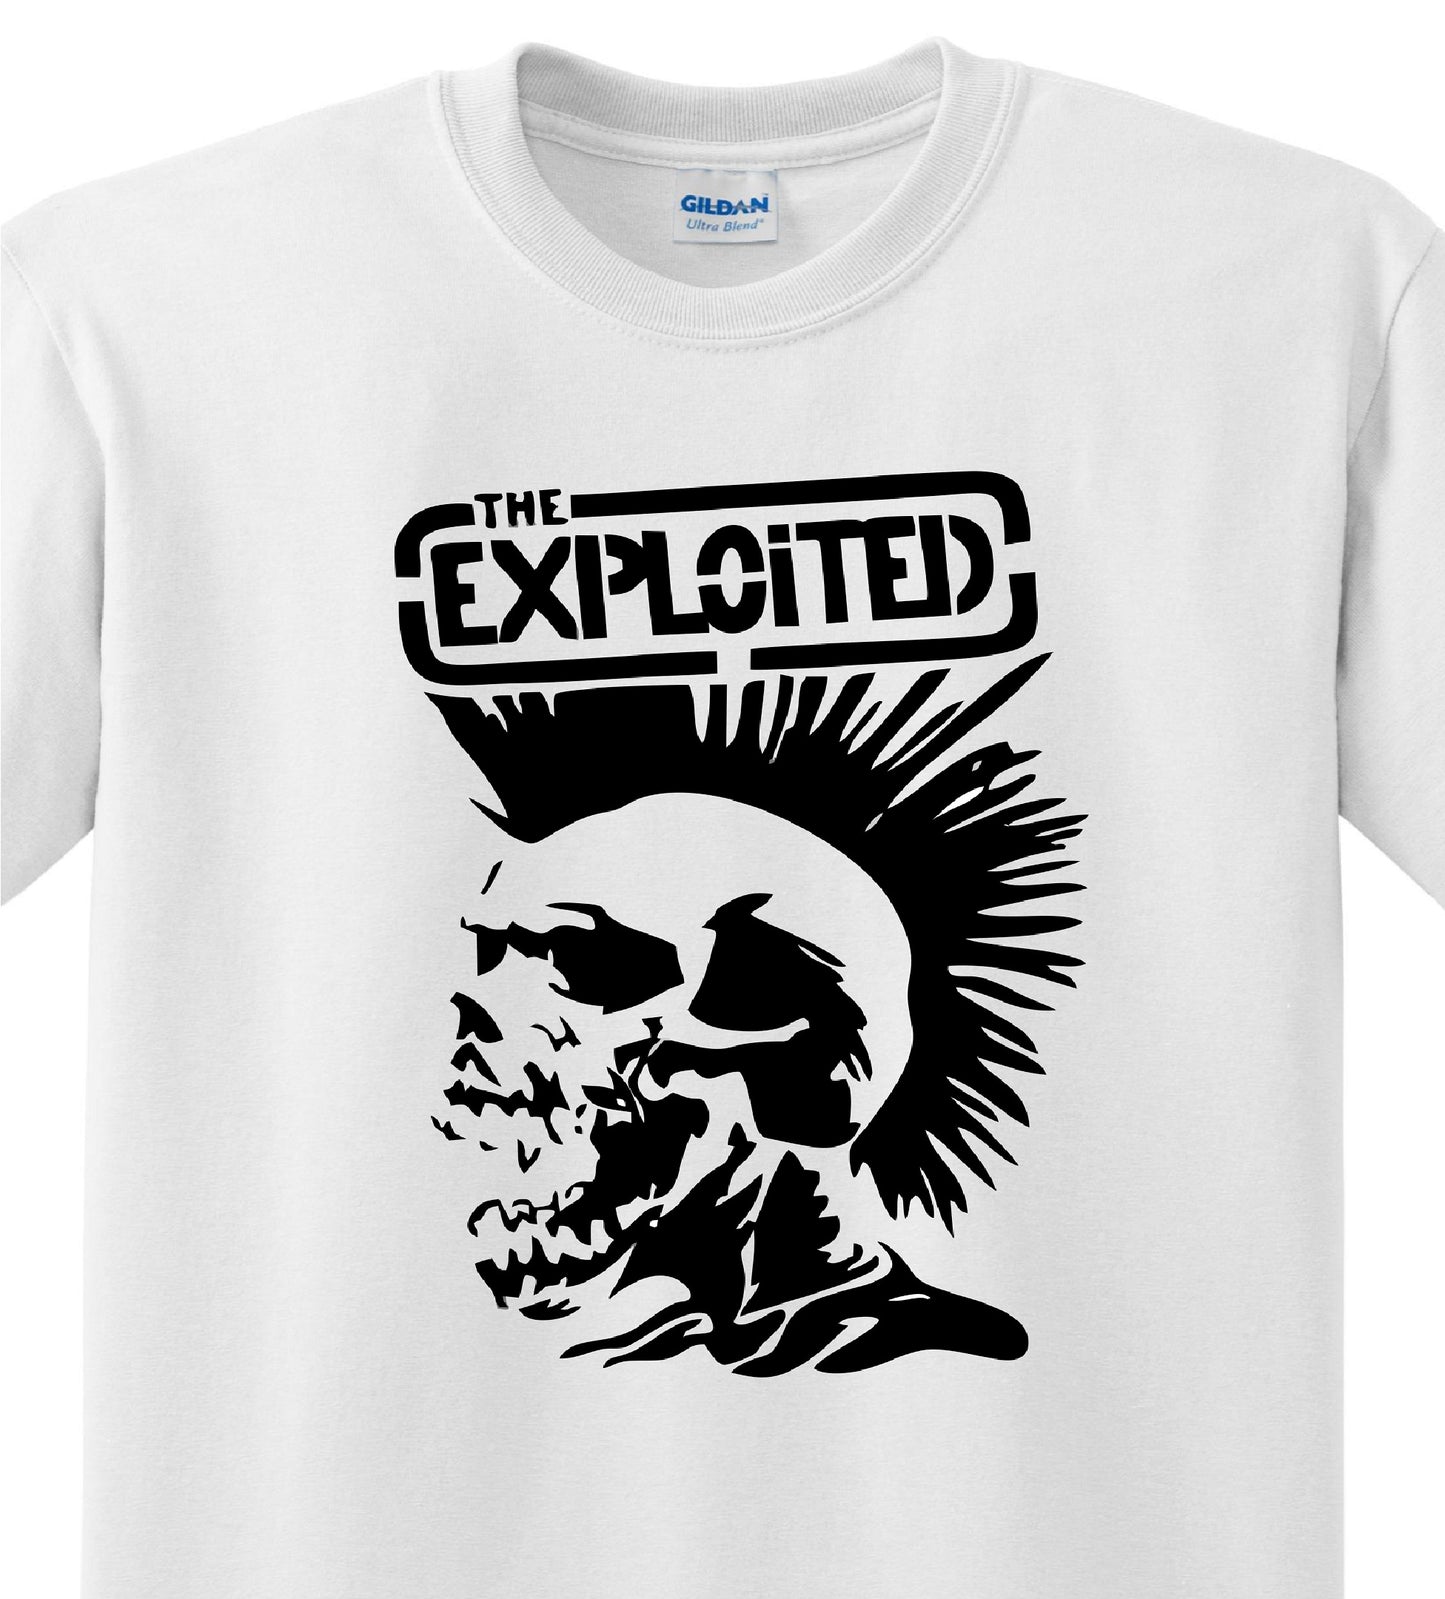 Radical Band  Men's Shirts - Exploited (White) - MYSTYLEMYCLOTHING